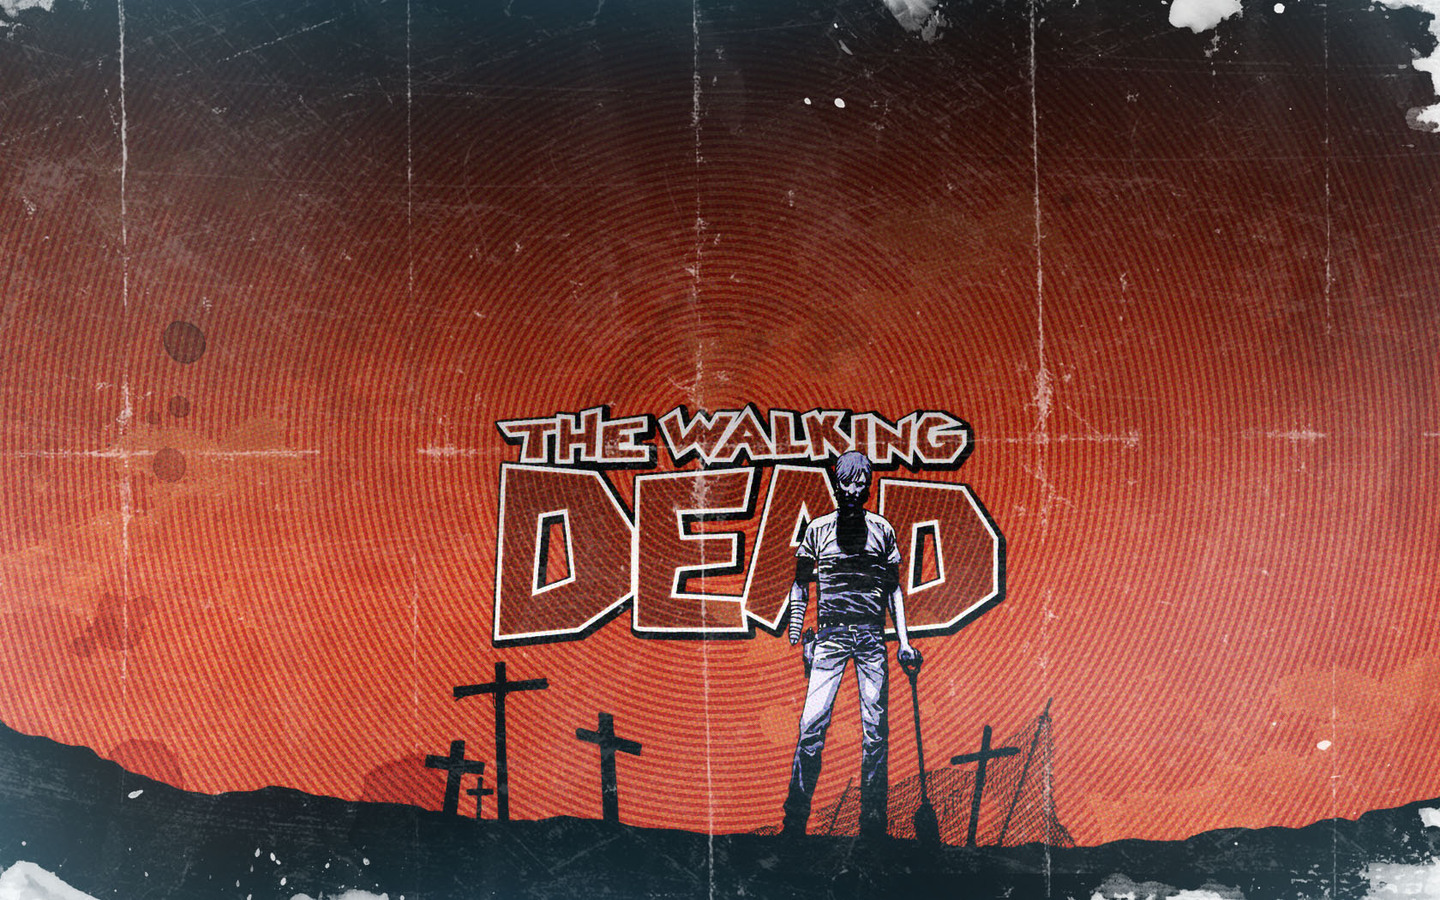 The Walking Dead Ic Wallpaper